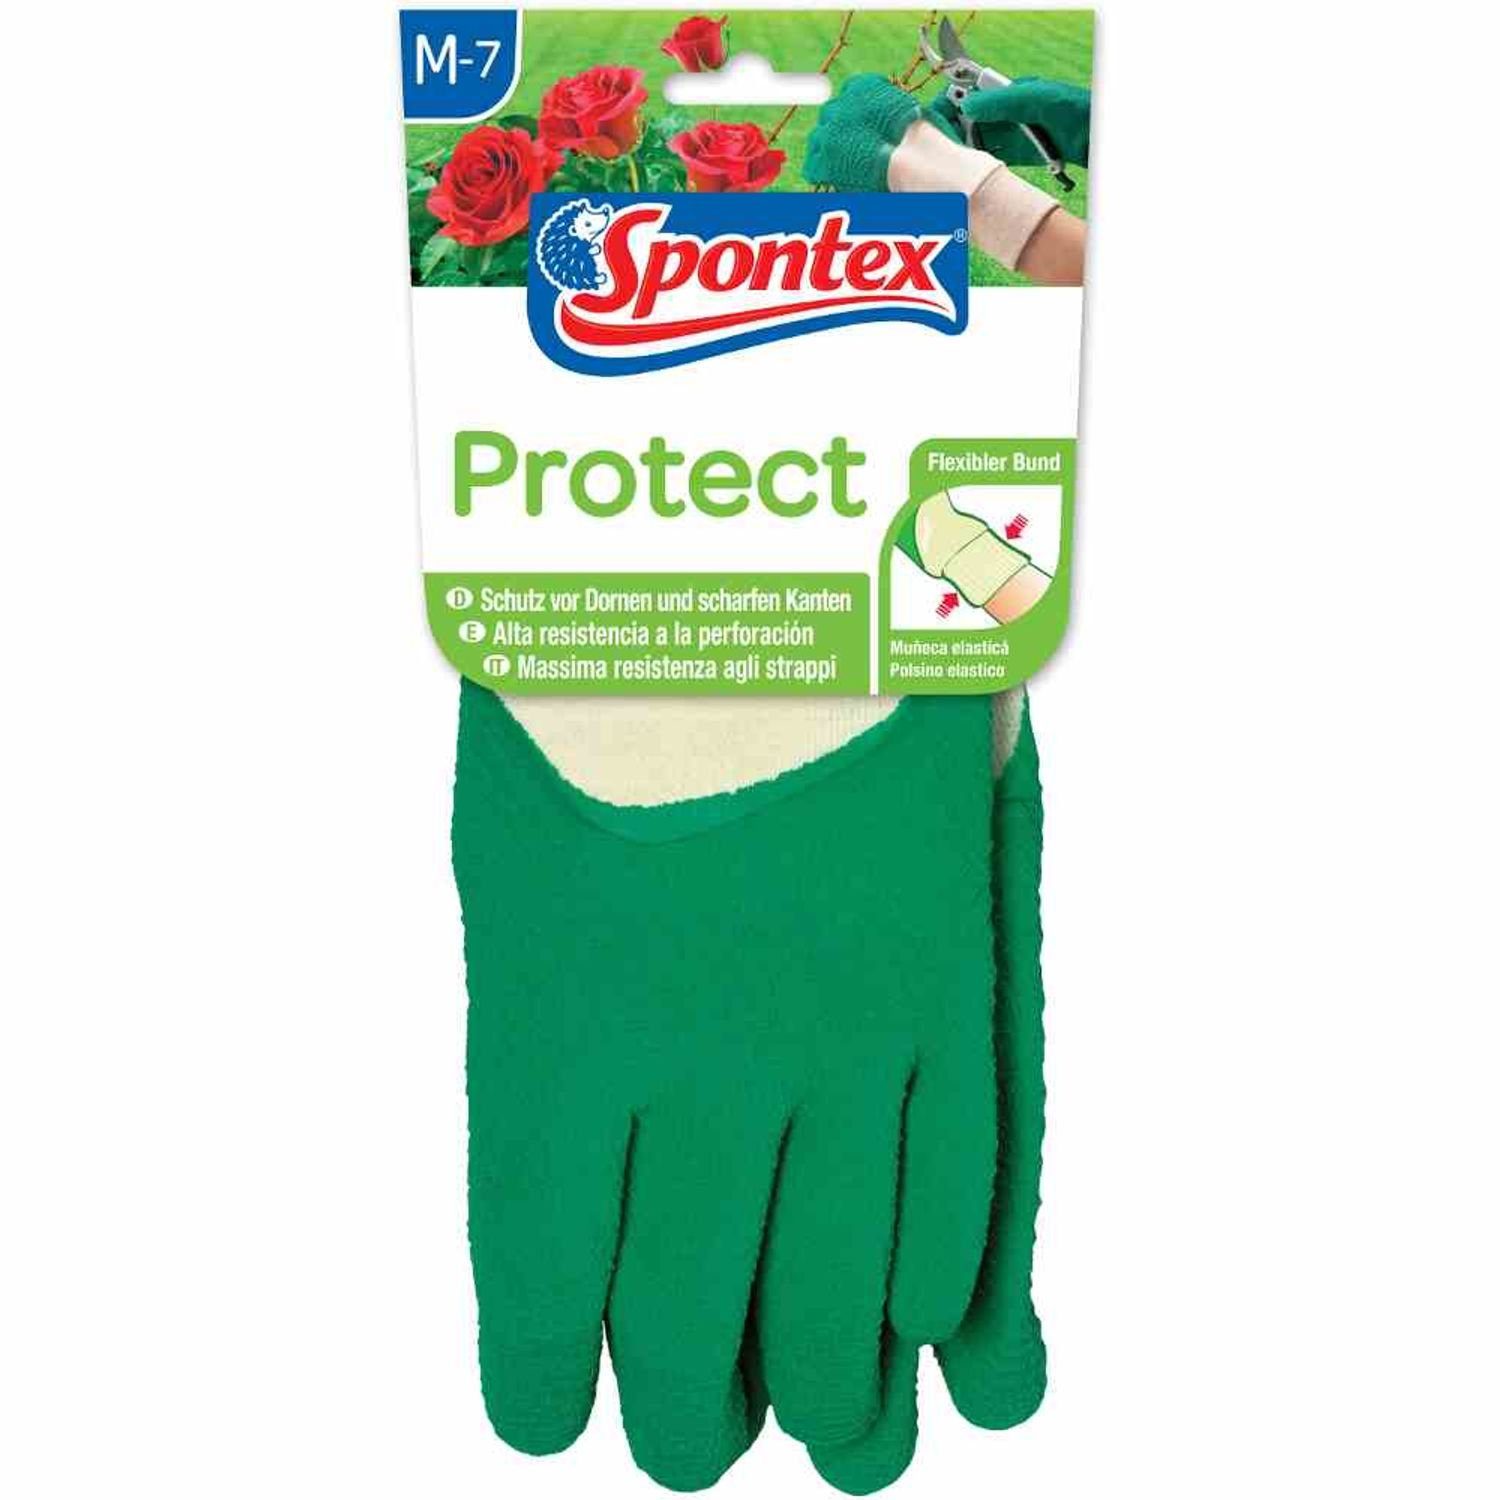 Gartenhandschuh SPONTEX 7 Gartenhandschuhe Protect Schutzhandschuh Gr.